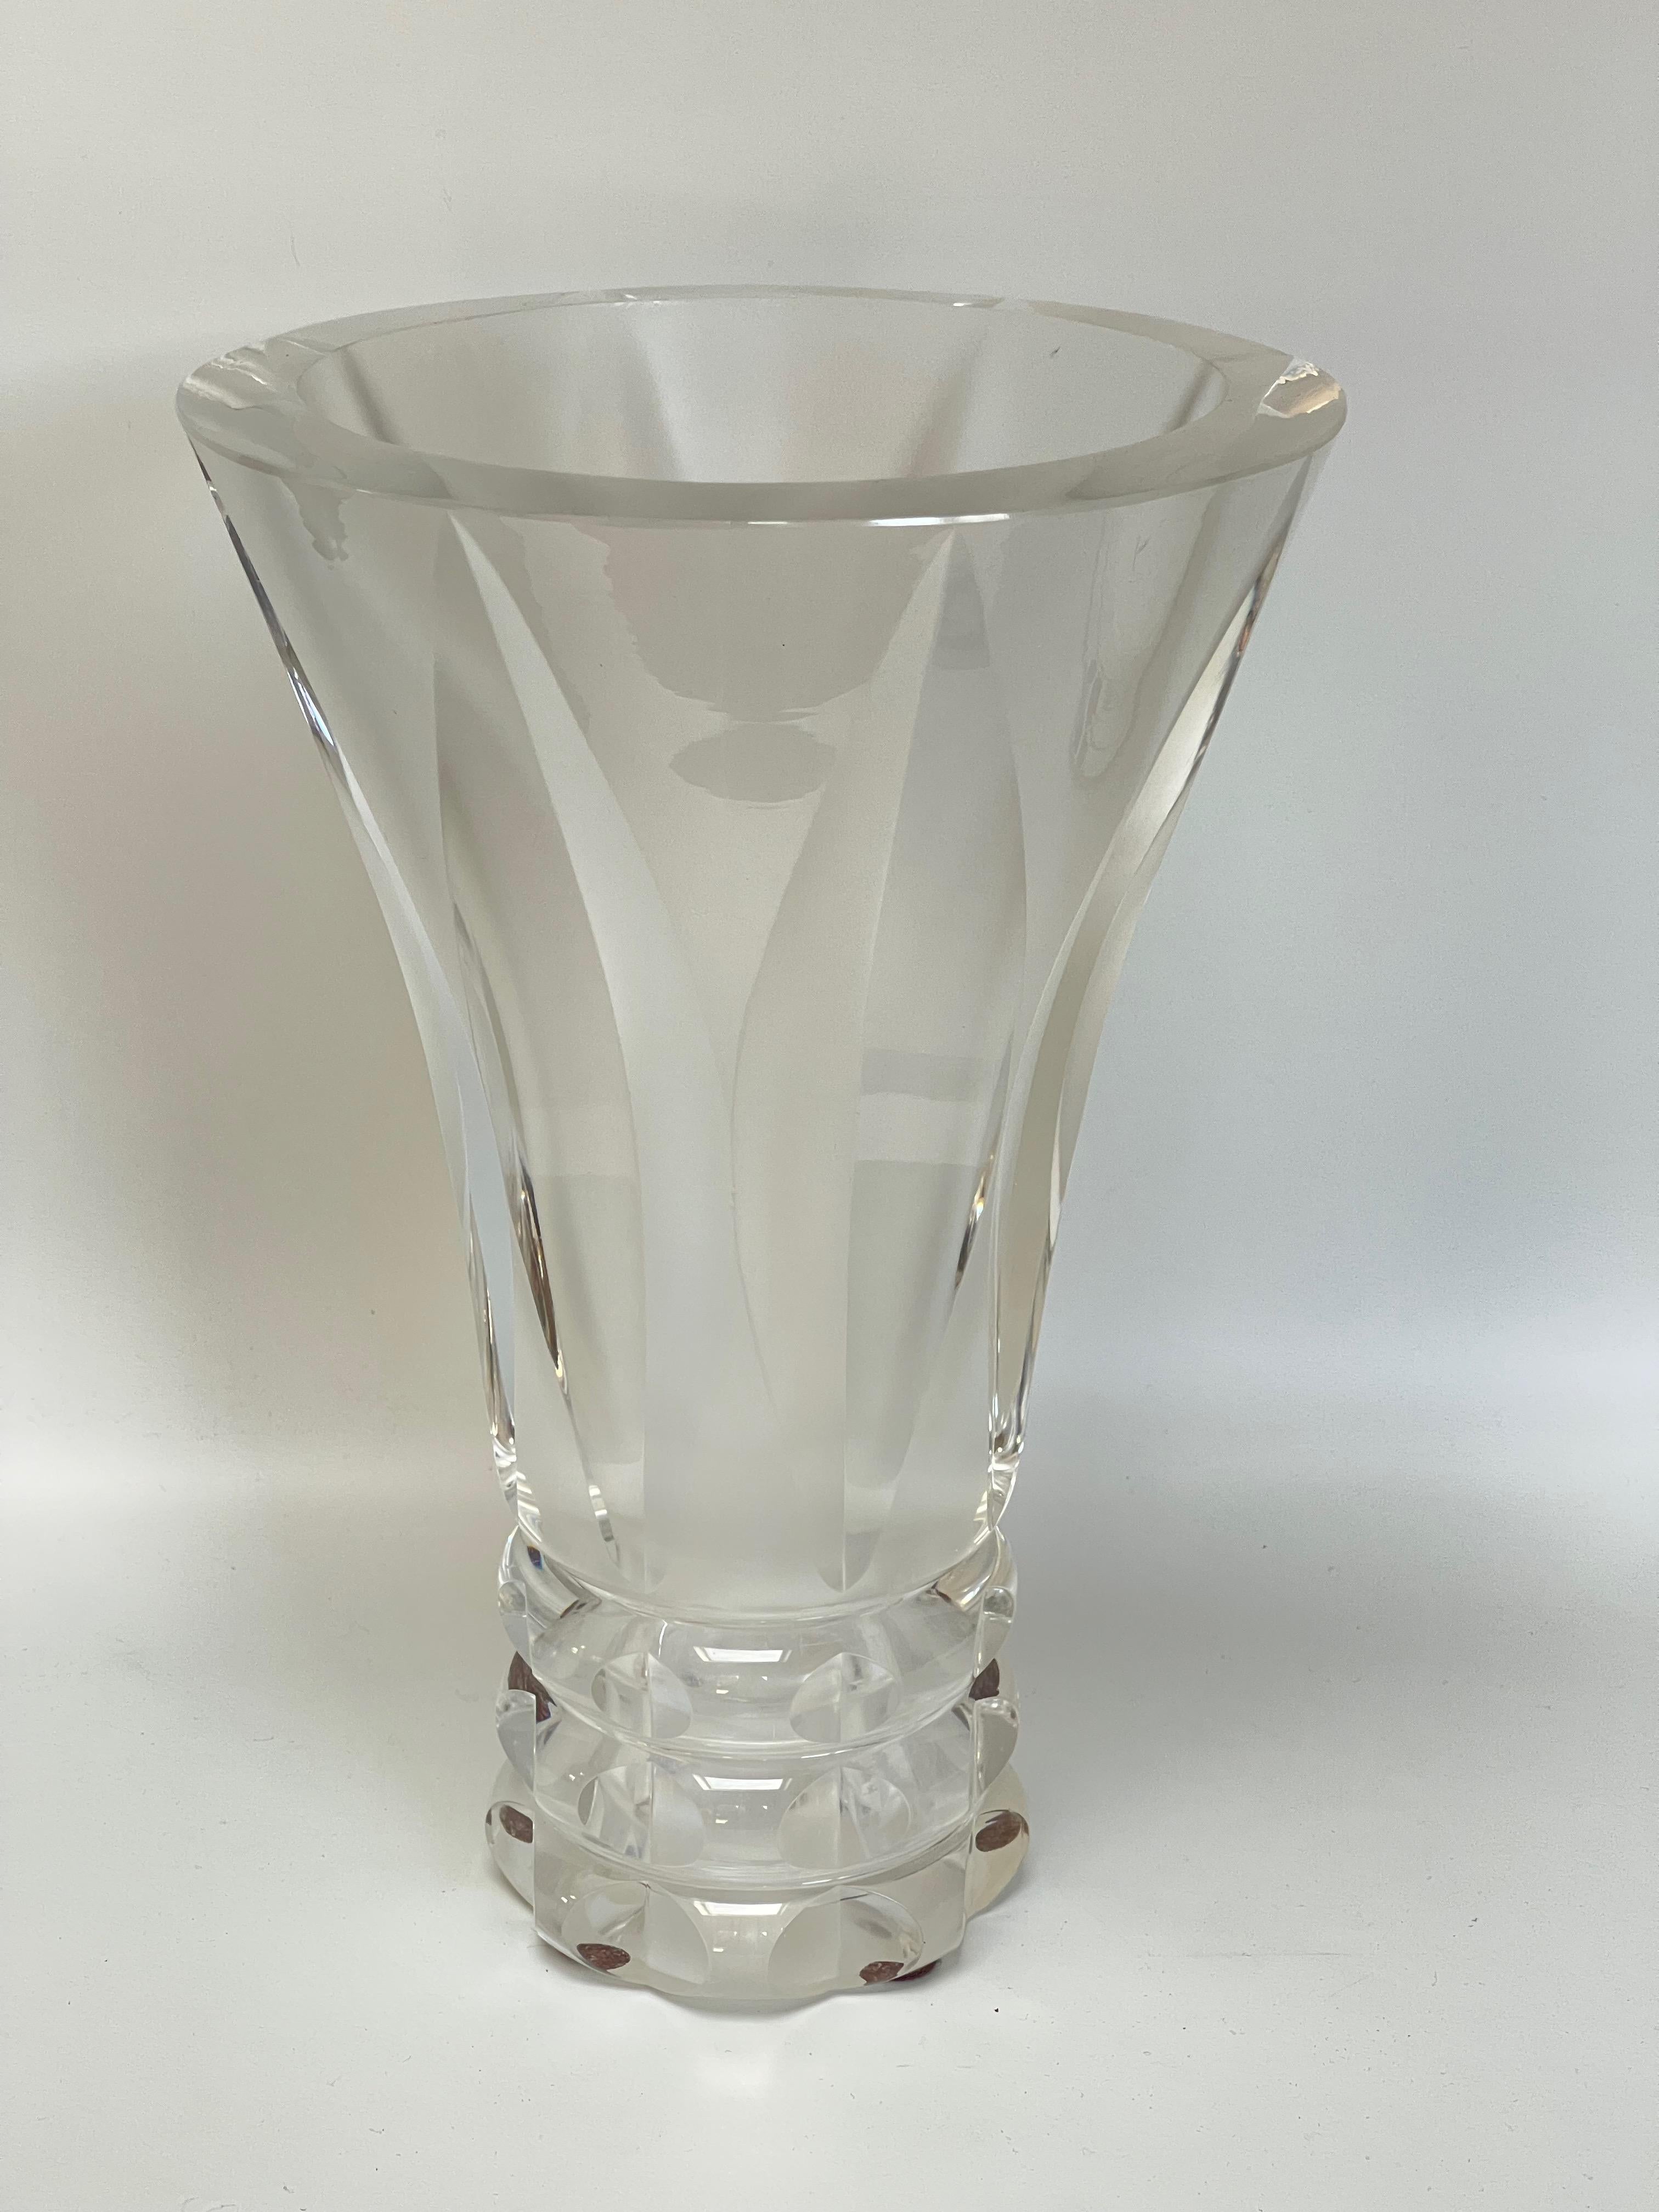 Grand vase en cristal taillé à pans coupés vers 1940.
Estampillé sous la base St Louis.
Petit éclat sous le vase, une rayure sur le haut du vase et une petite rayure au milieu du vase (voir photos).
Vase maté à l'intérieur pour lui donner plus de